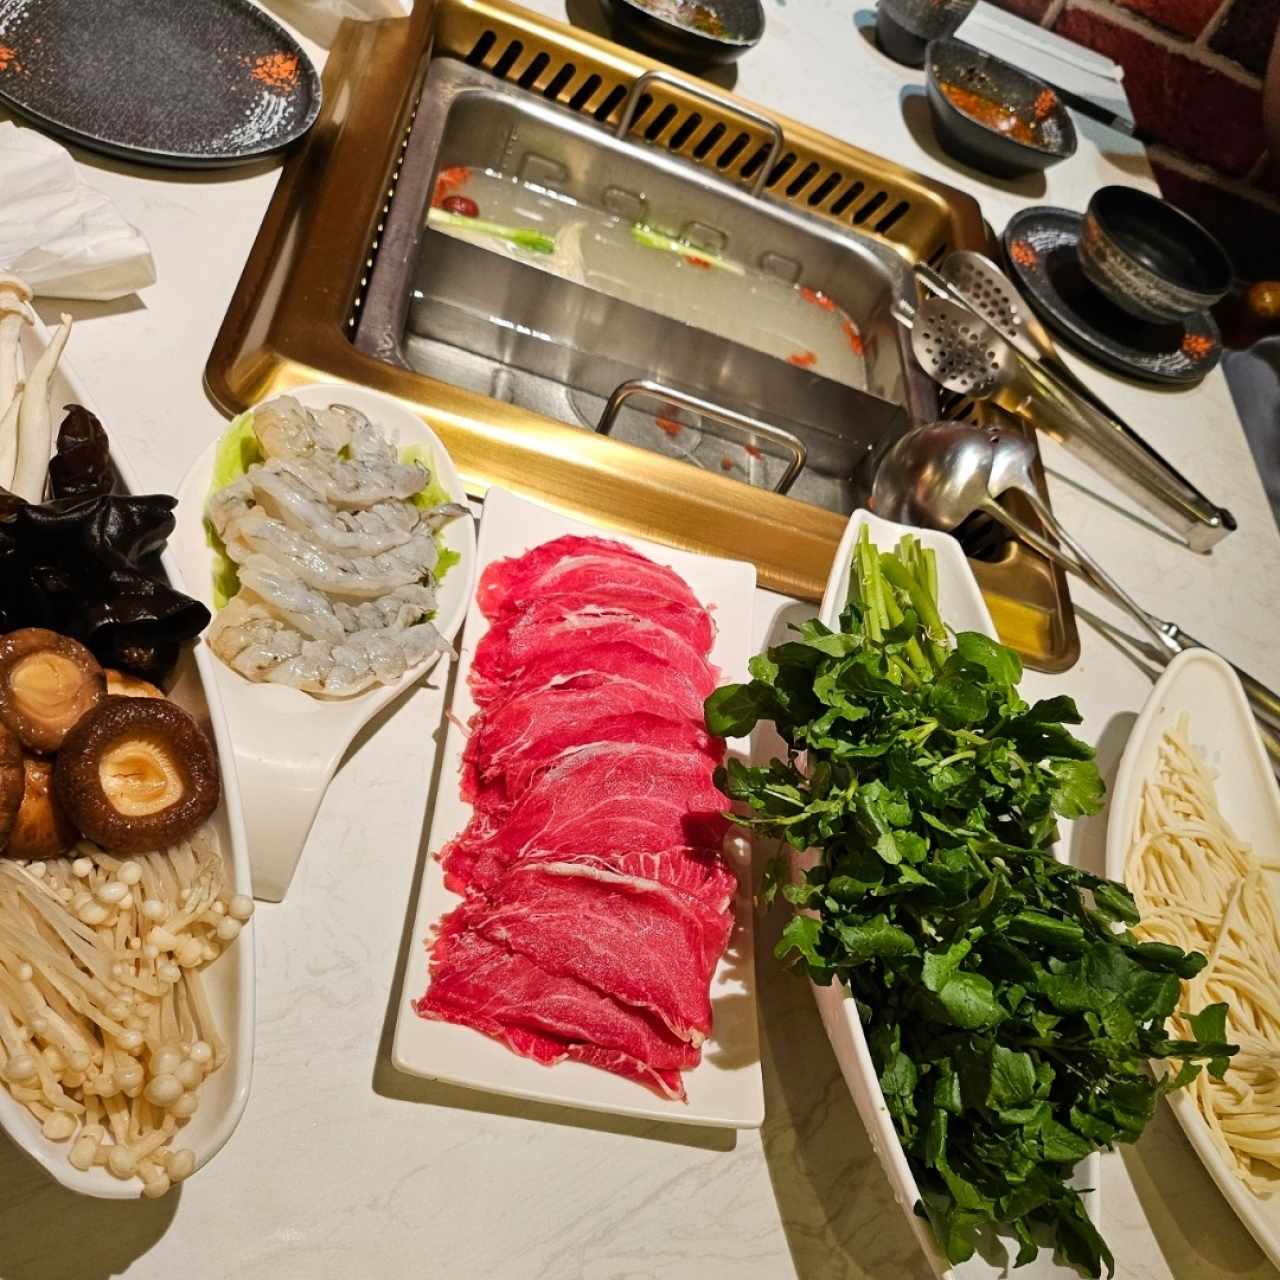 Acompañamientos variados - Variedad De Hongos
Camarones
Shoulder Steak
Hojas de berro
Fideos coreanos